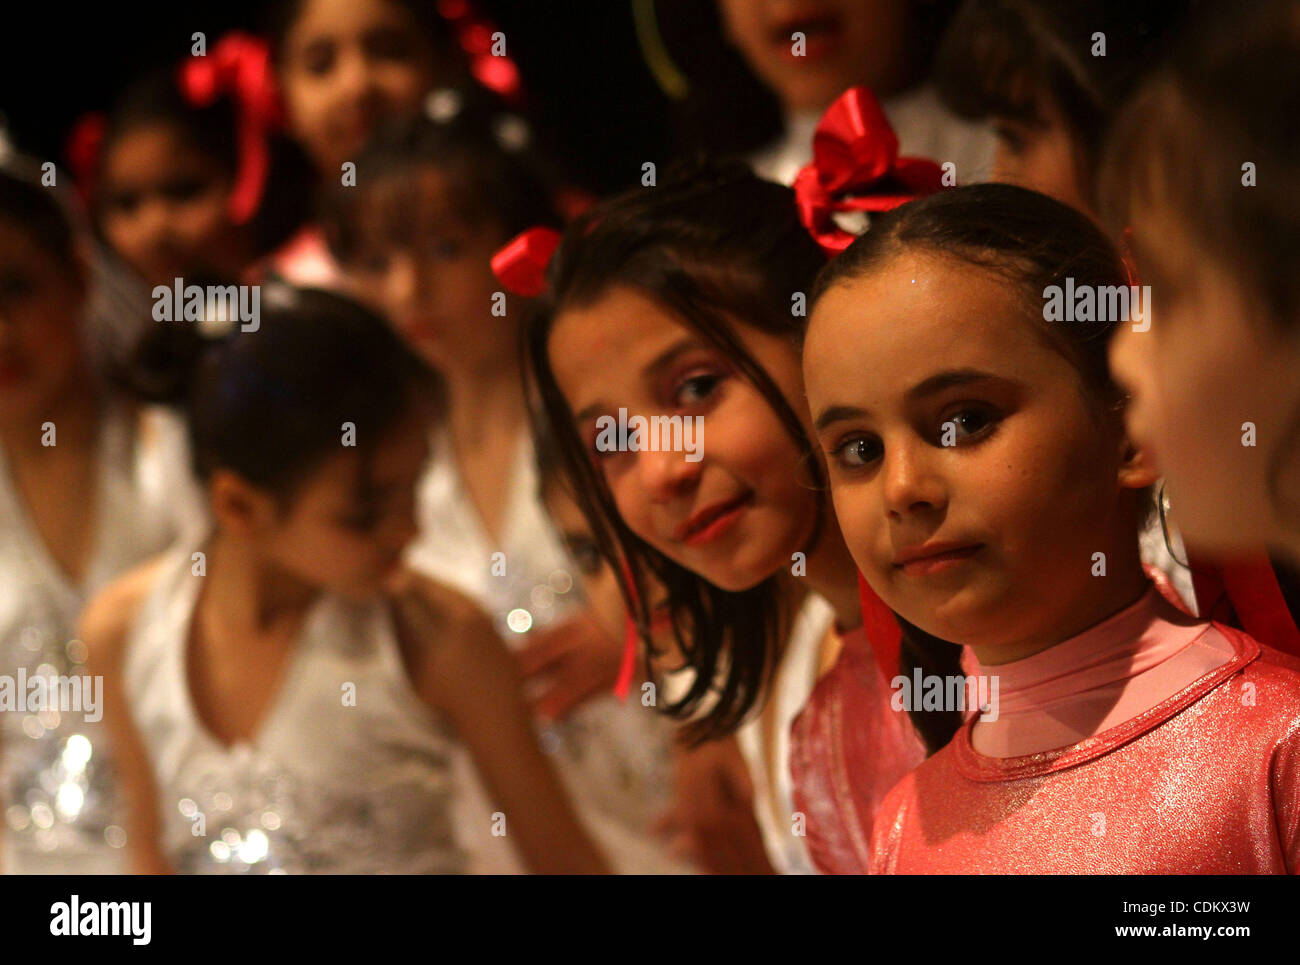 Palästinensische Kinder tanzen während einer unterhaltsamen Feier organisiert von UNRWA im Shawwa Theatre in Gaza-Stadt am März 28,2011... Foto von Ashraf Amra Stockfoto